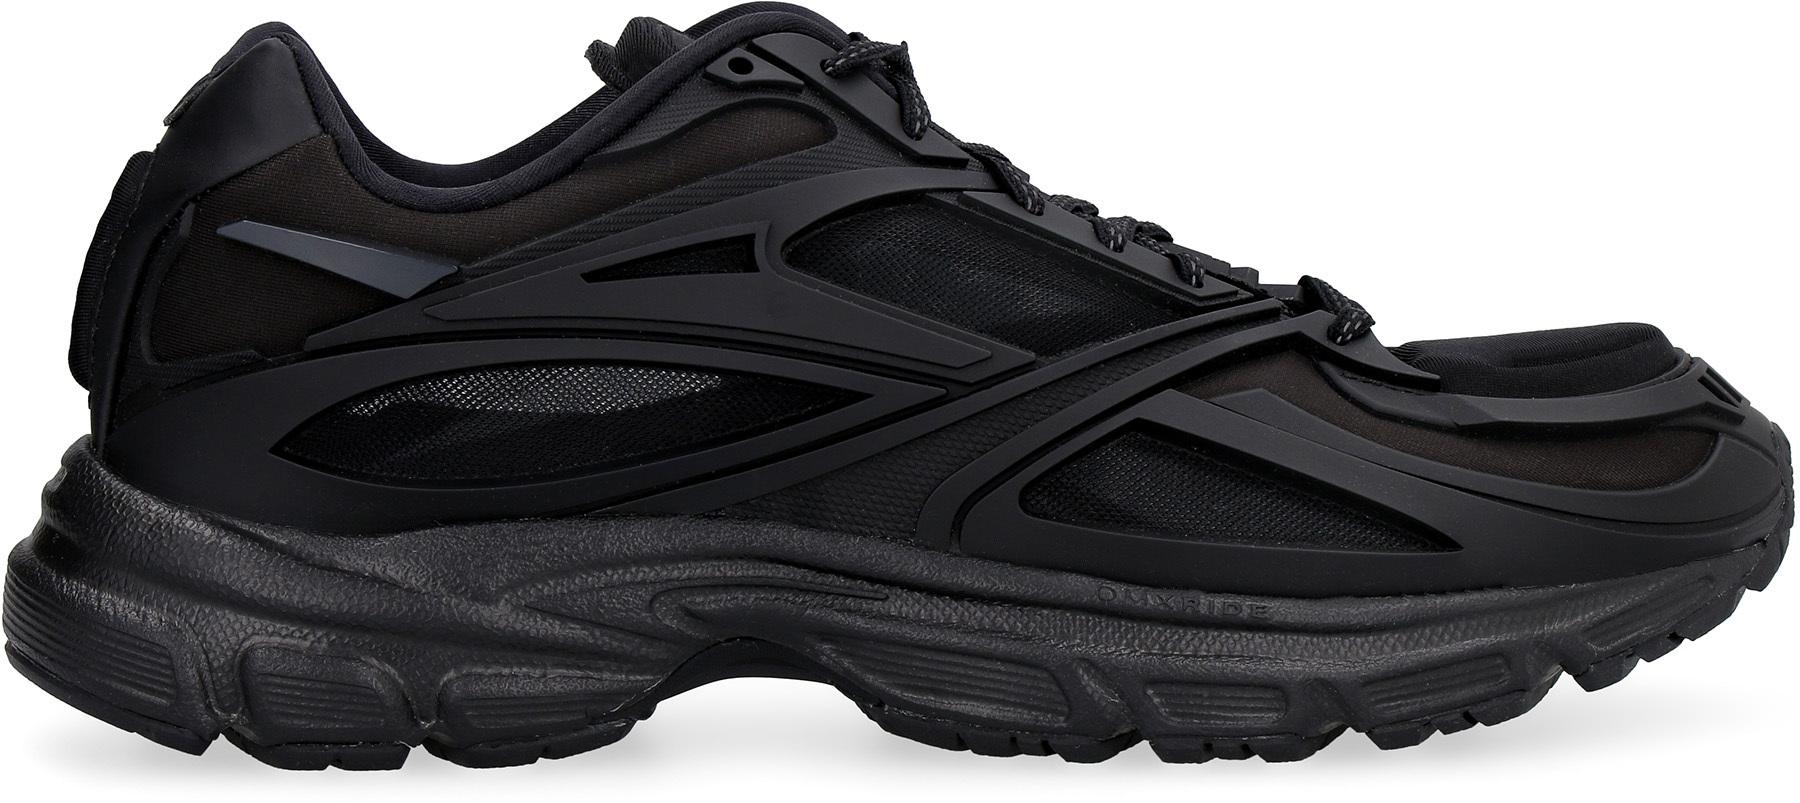 Reebok Rubber Premier Road Modern Sneakers in Black for Men - Lyst